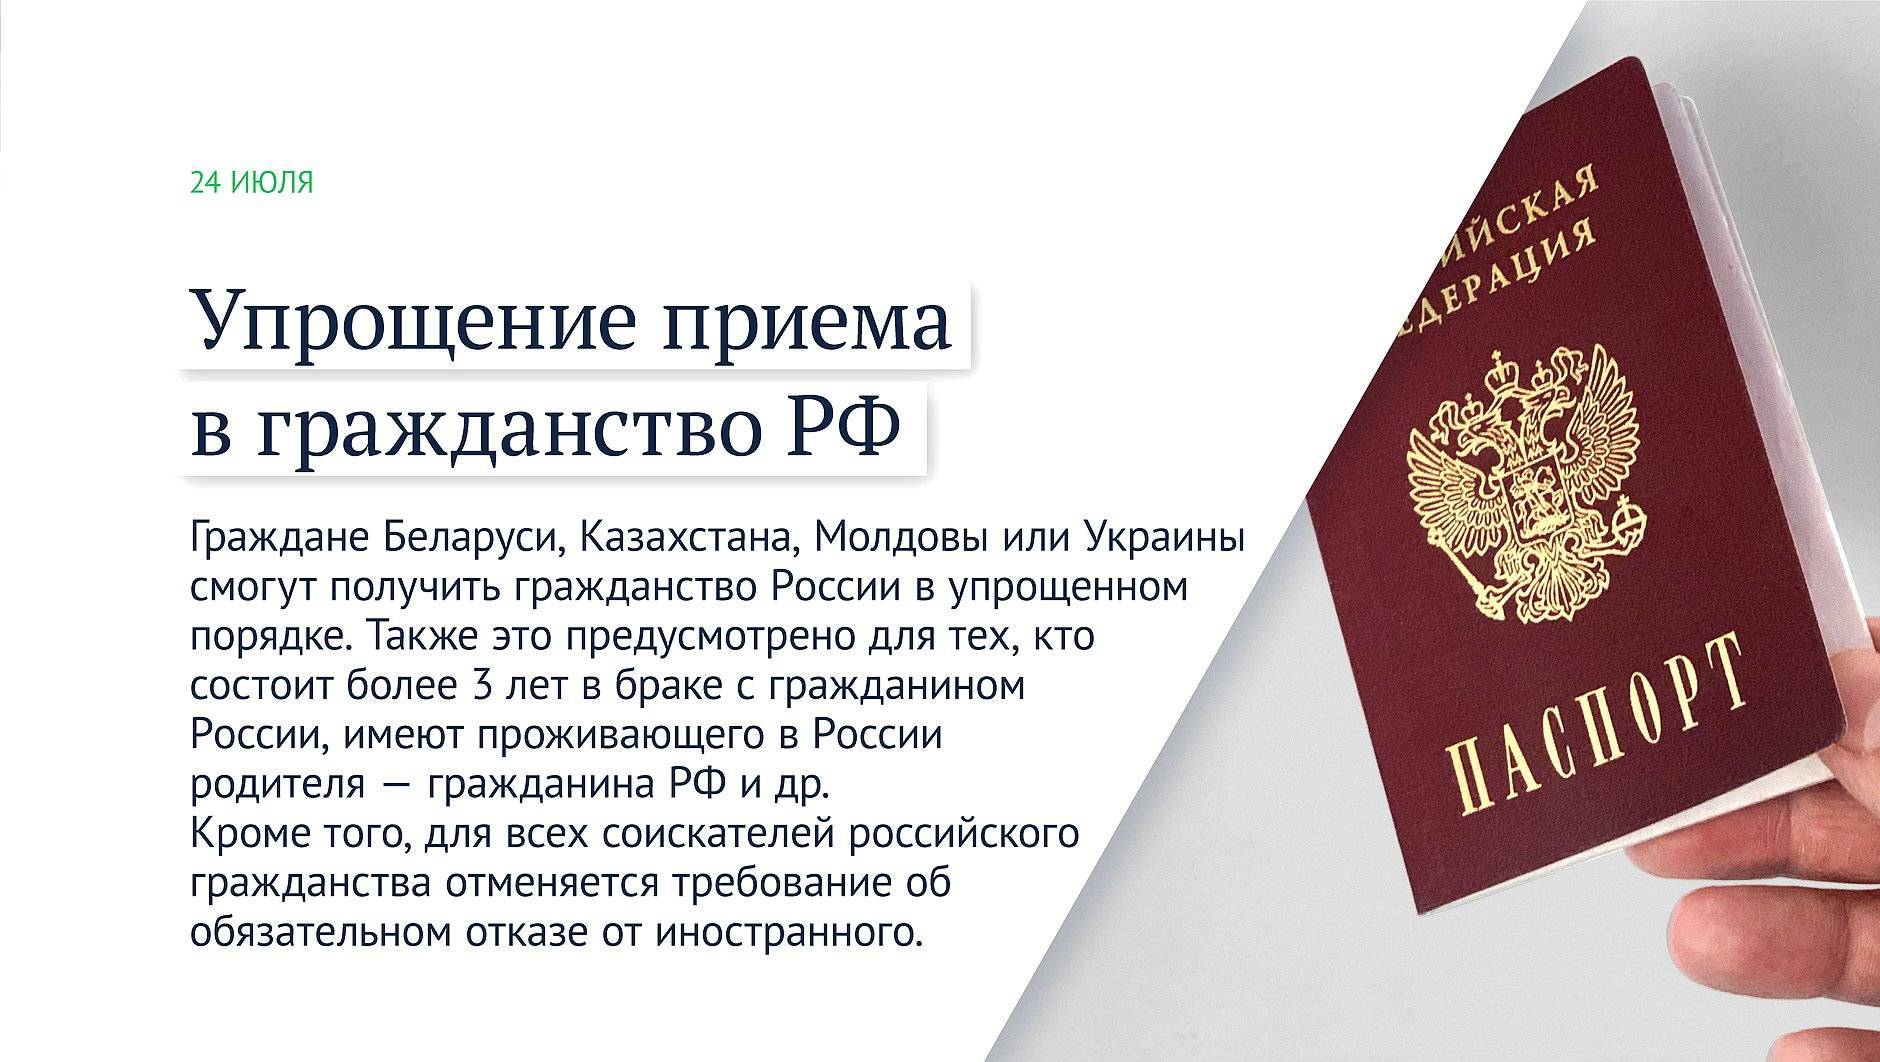 Как гражданину украины получить российское гражданство: подробная информация